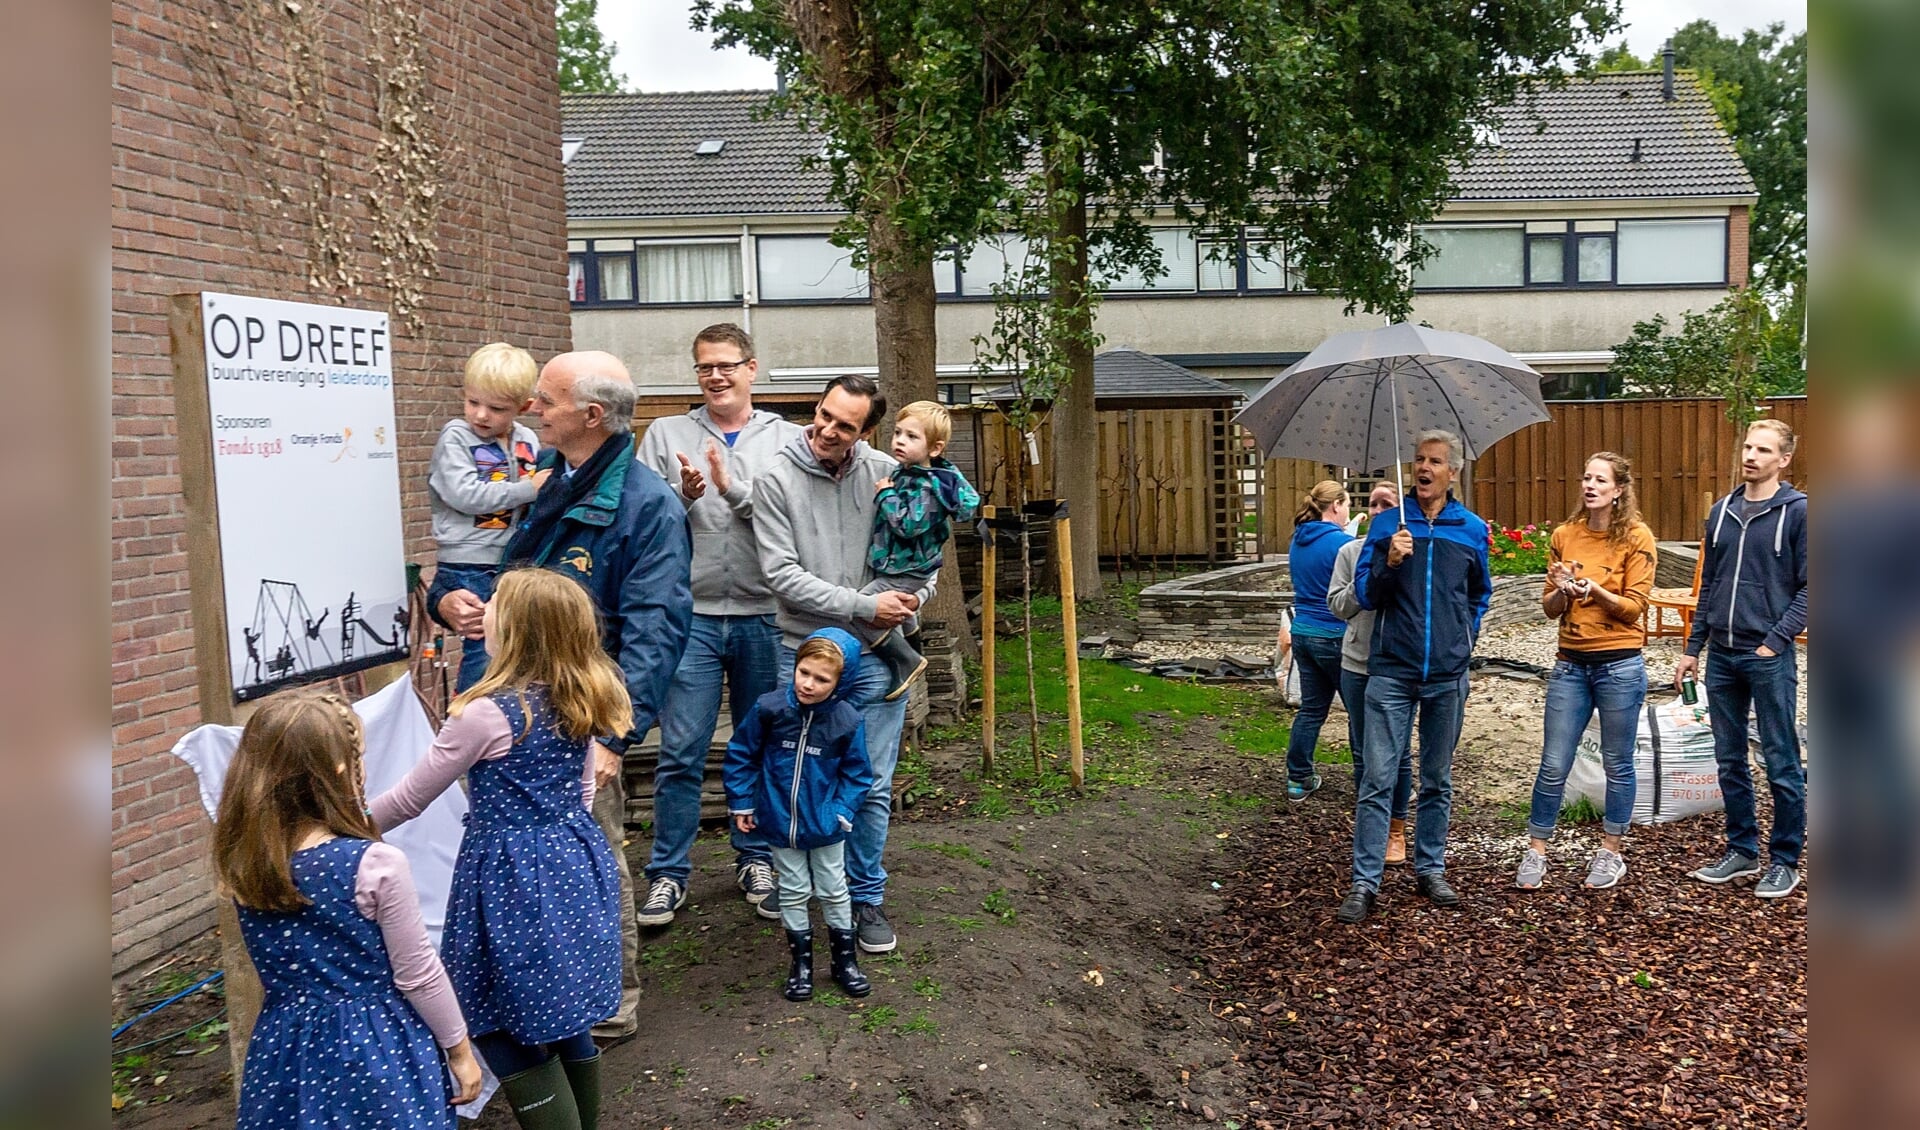 Wethouder Gardeniers opent de speelplaats, samen met enkele buurtkindren. Naast Gardeniers applaudisseert voorzitter Frank Versteegen van Op Dreef. 